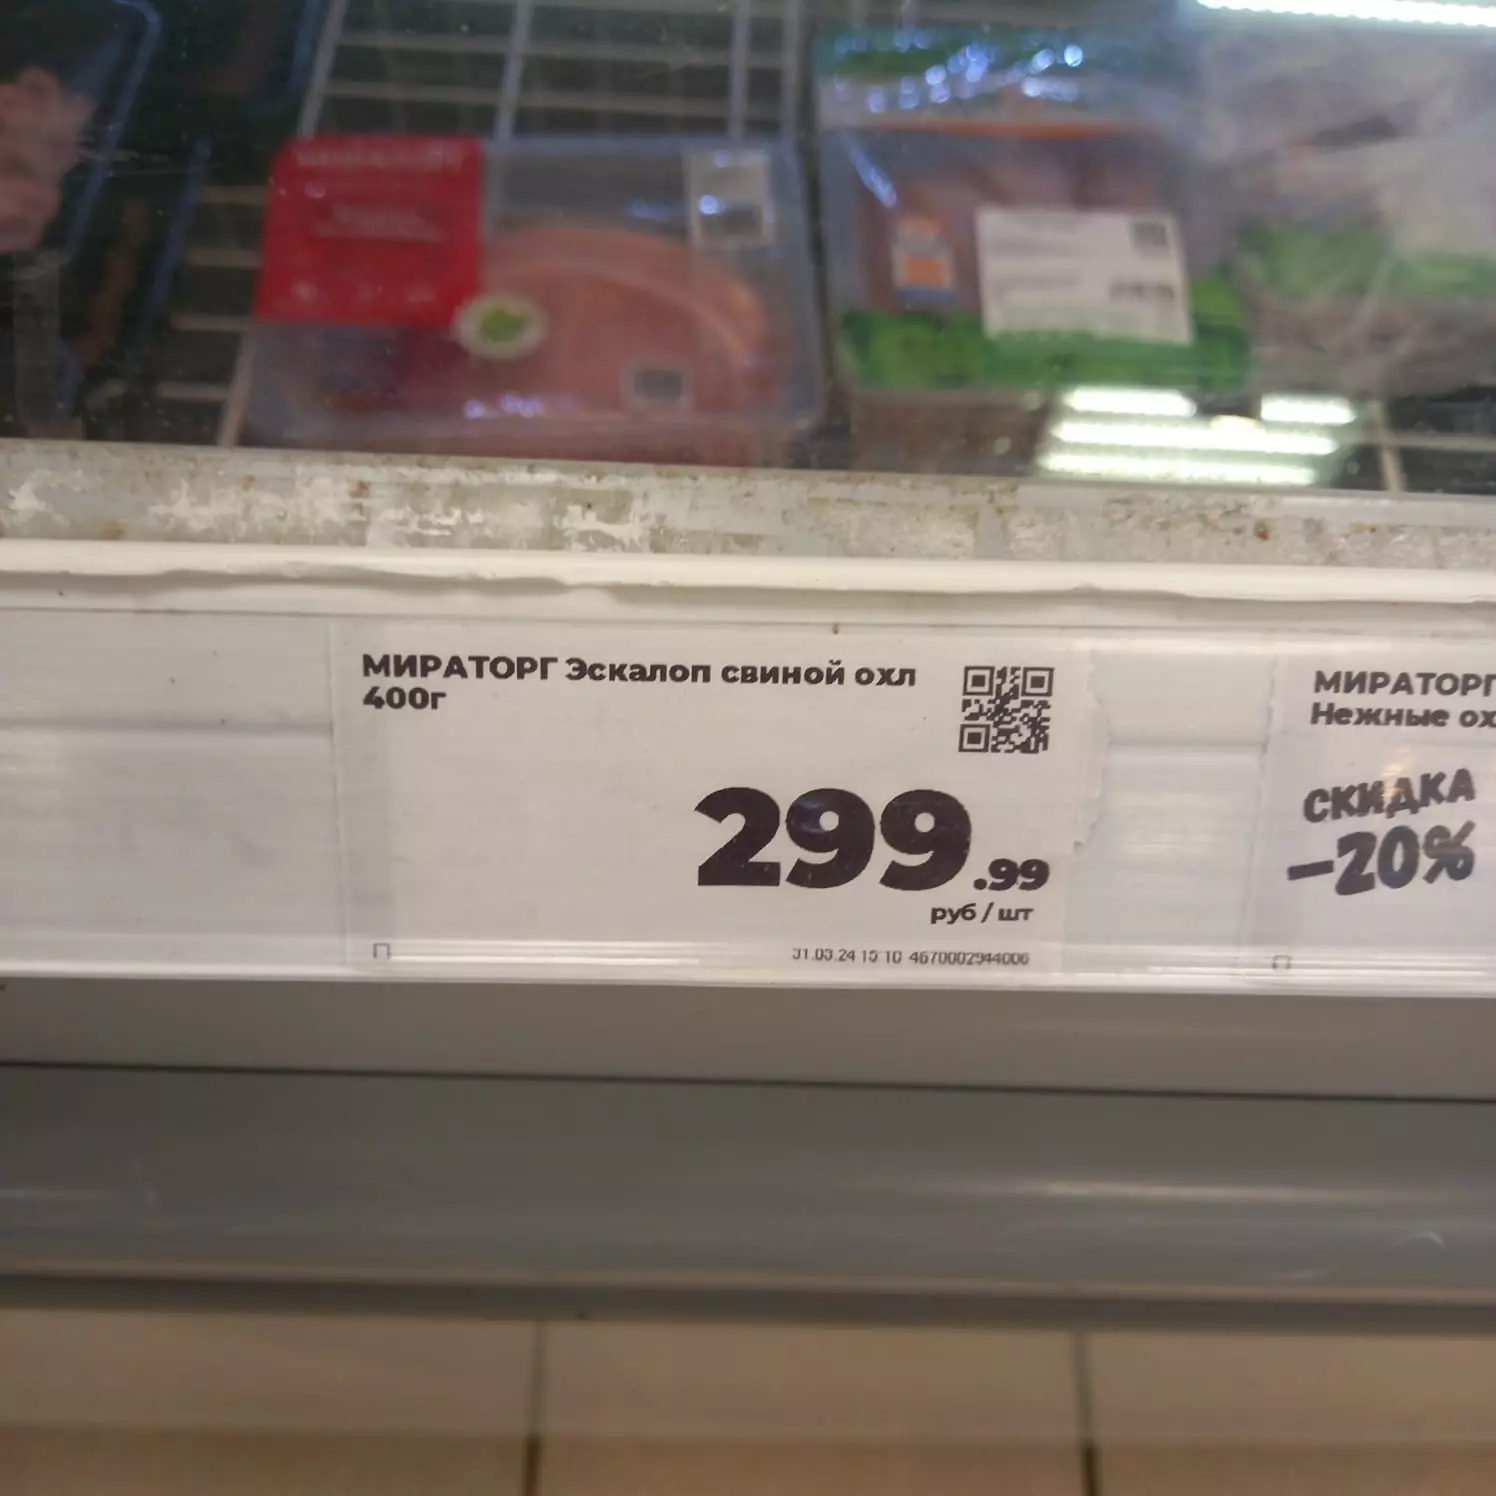 В общем, запекать цыпленка табака (в магазине тот стоит 400 рублей) и ужинать стейками явно не получится.